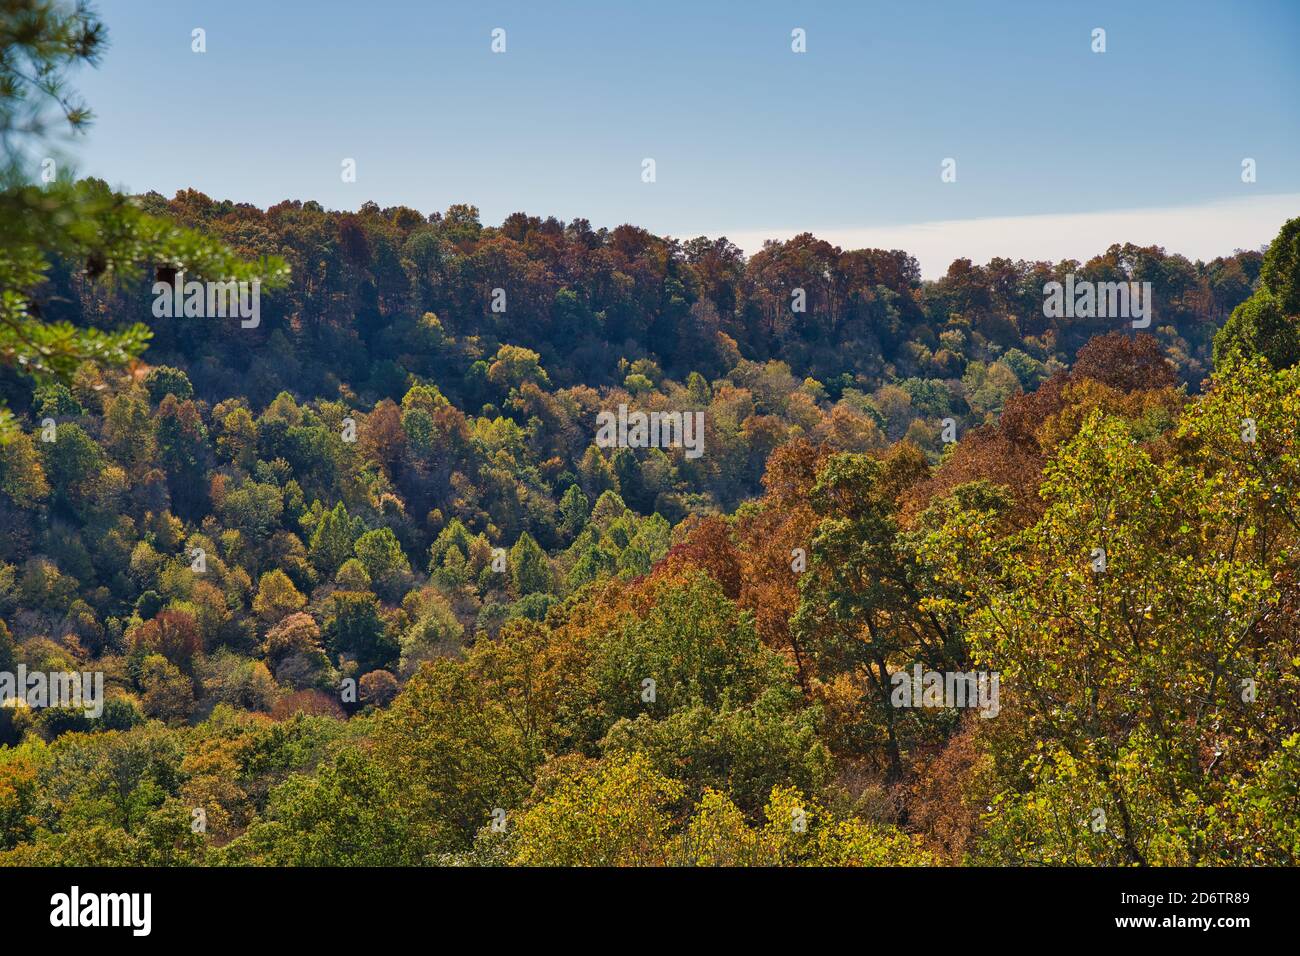 Vallée pendant l'automne dans le bourdonnement chillicothe. Arbres colorés sur une colline de contreforts d'apalaches. Feuilles orange, rouge et jaune sur les arbres Banque D'Images